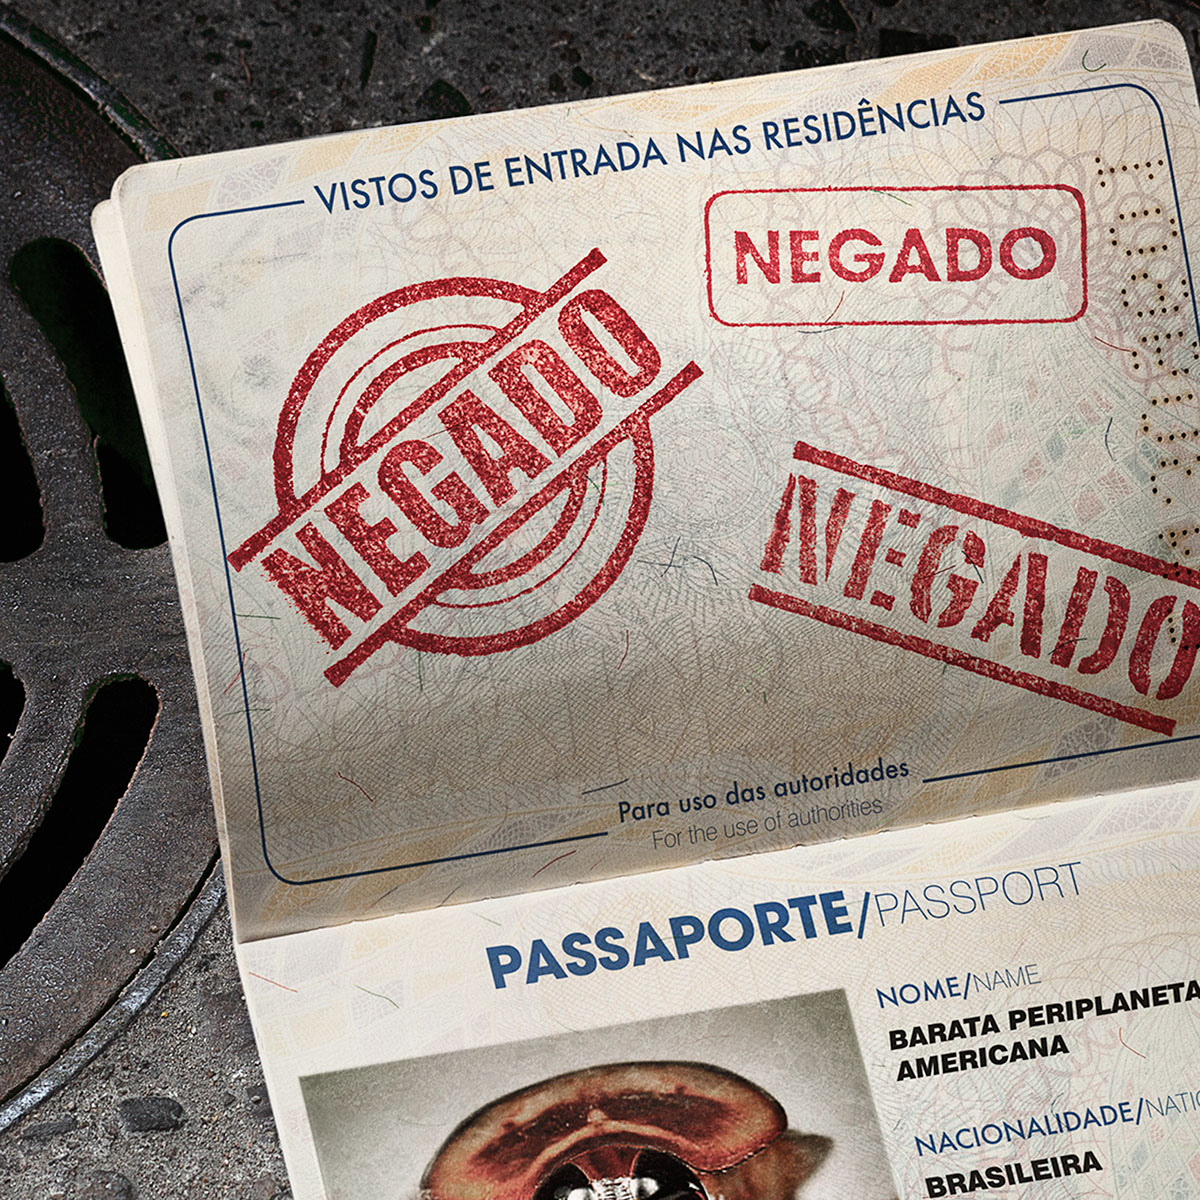 passaport negado negative insetos BASF Brasil publicidade e21 photoshop photo Fotografia